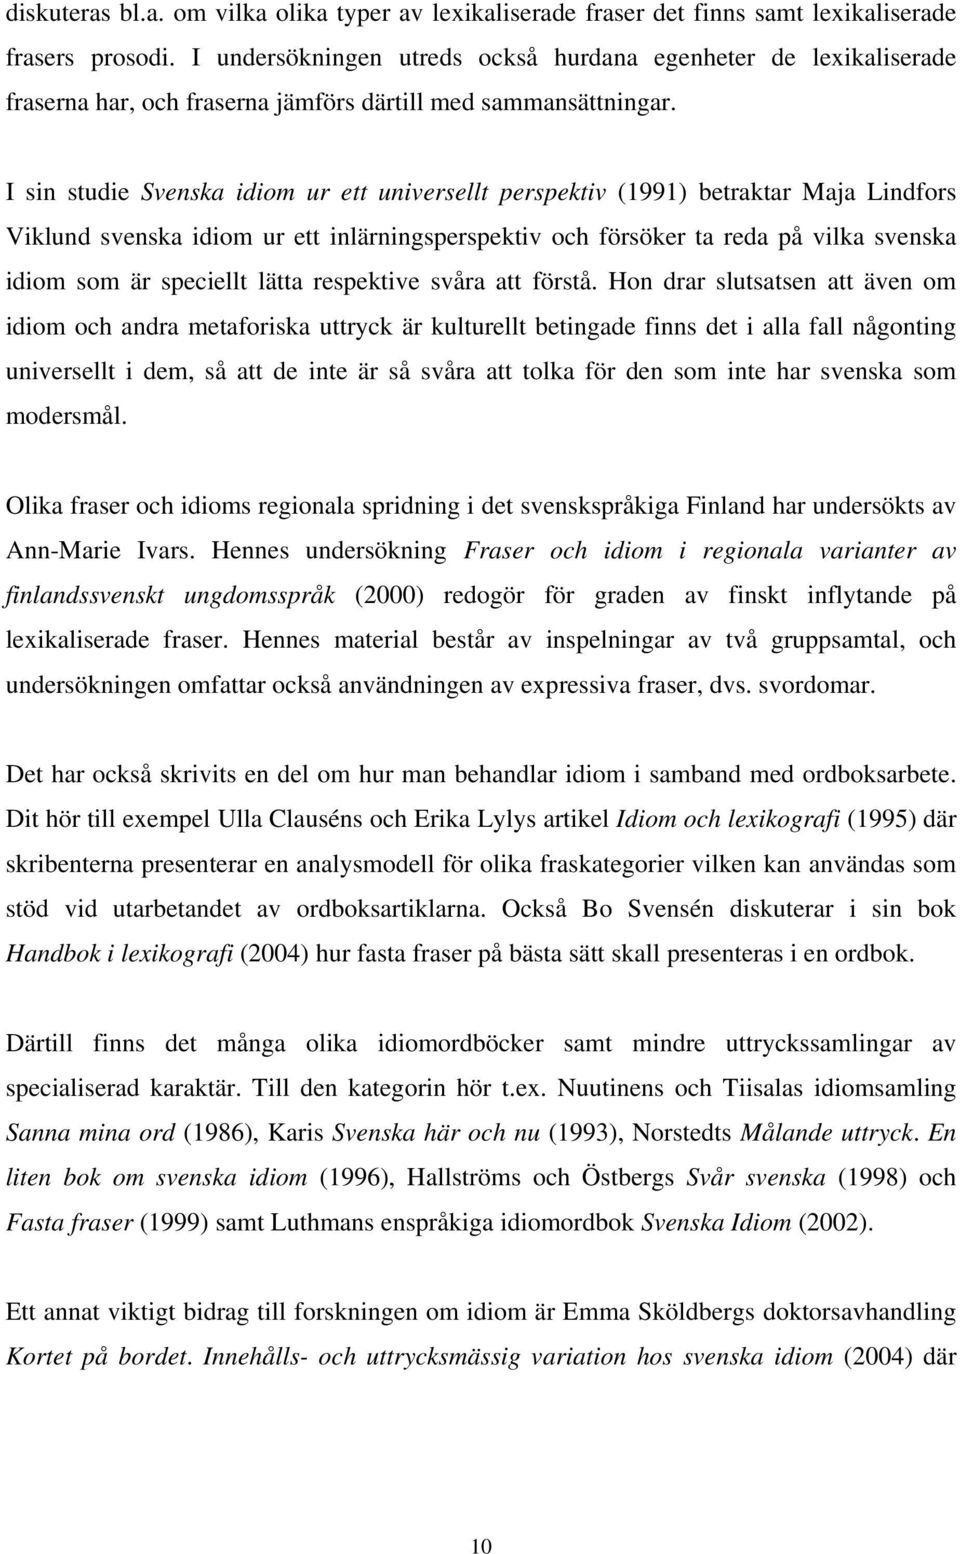 I sin studie Svenska idiom ur ett universellt perspektiv (1991) betraktar Maja Lindfors Viklund svenska idiom ur ett inlärningsperspektiv och försöker ta reda på vilka svenska idiom som är speciellt